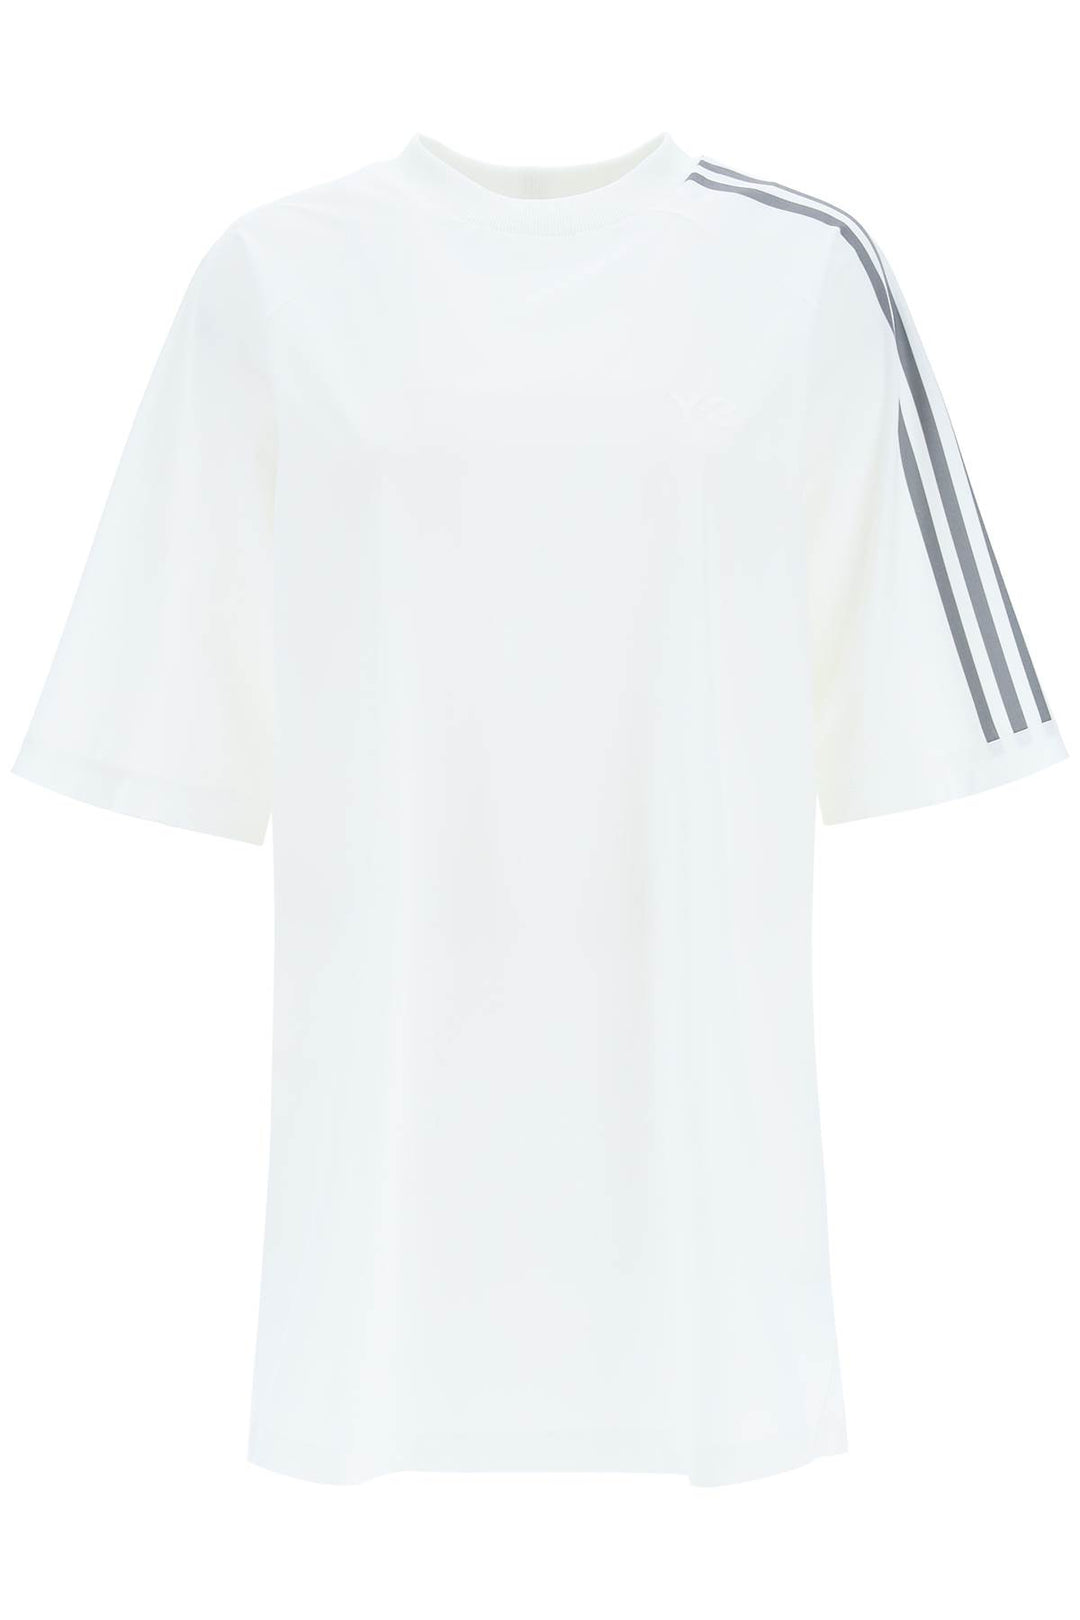 Mini Abito T Shirt - Y-3 - Donna